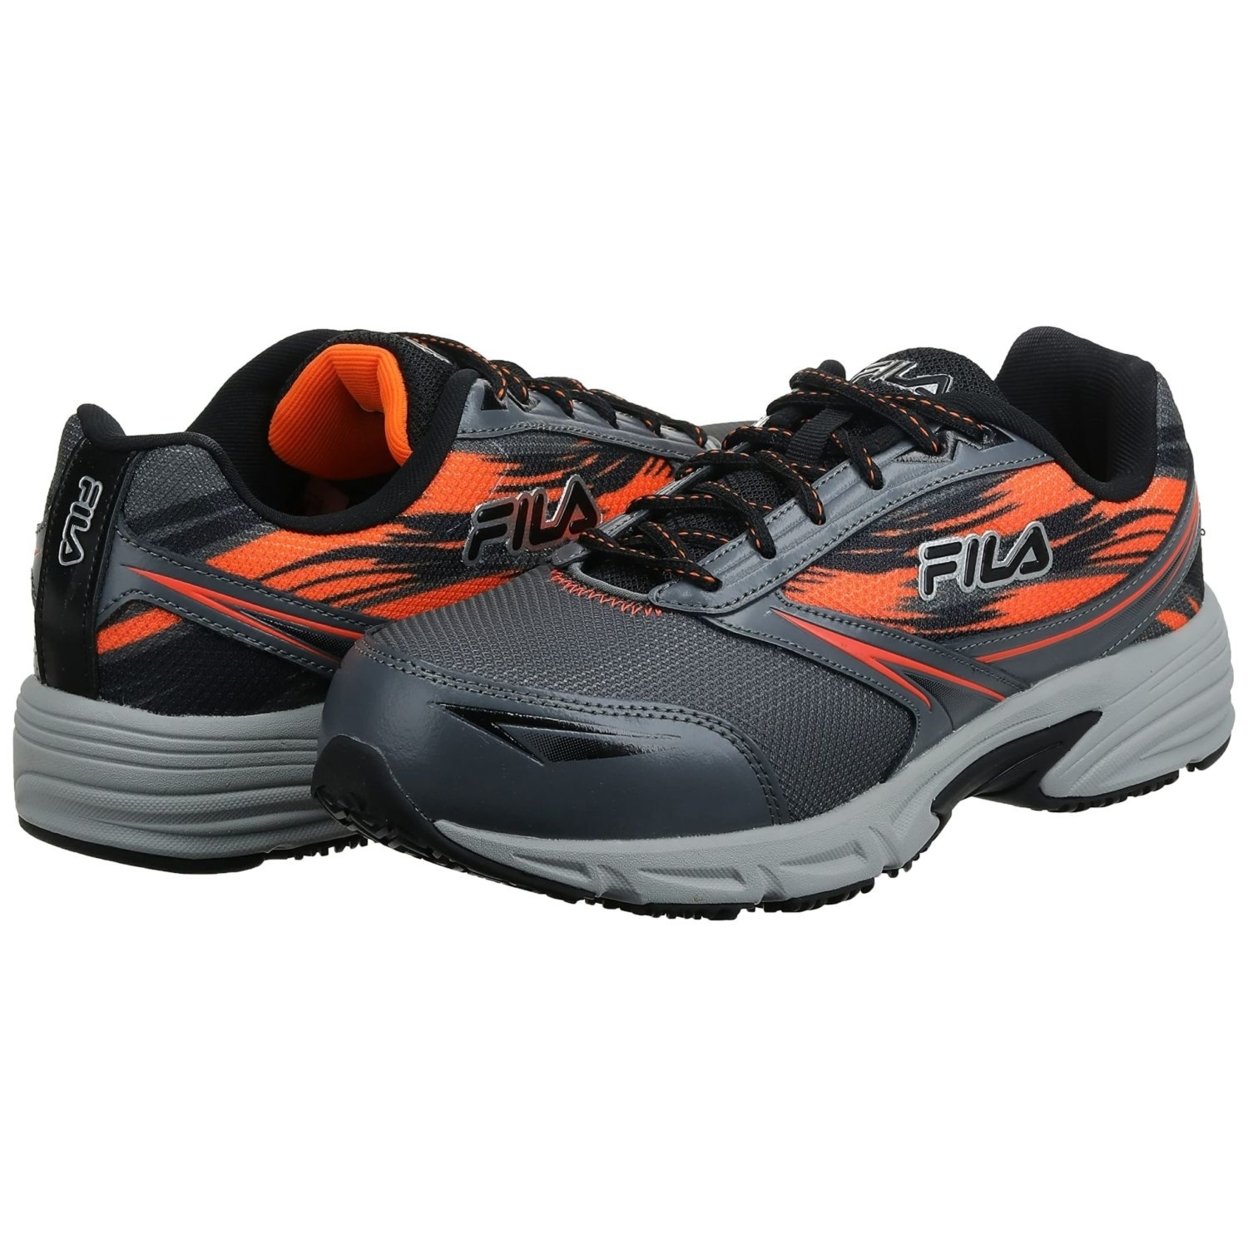 Fila Menâs Memory Meiera 2 Slip Resistant And Composite Toe Work Shoe CSRK/BLK/VORN - Castlerock/Black/Vibrant Orange, 10